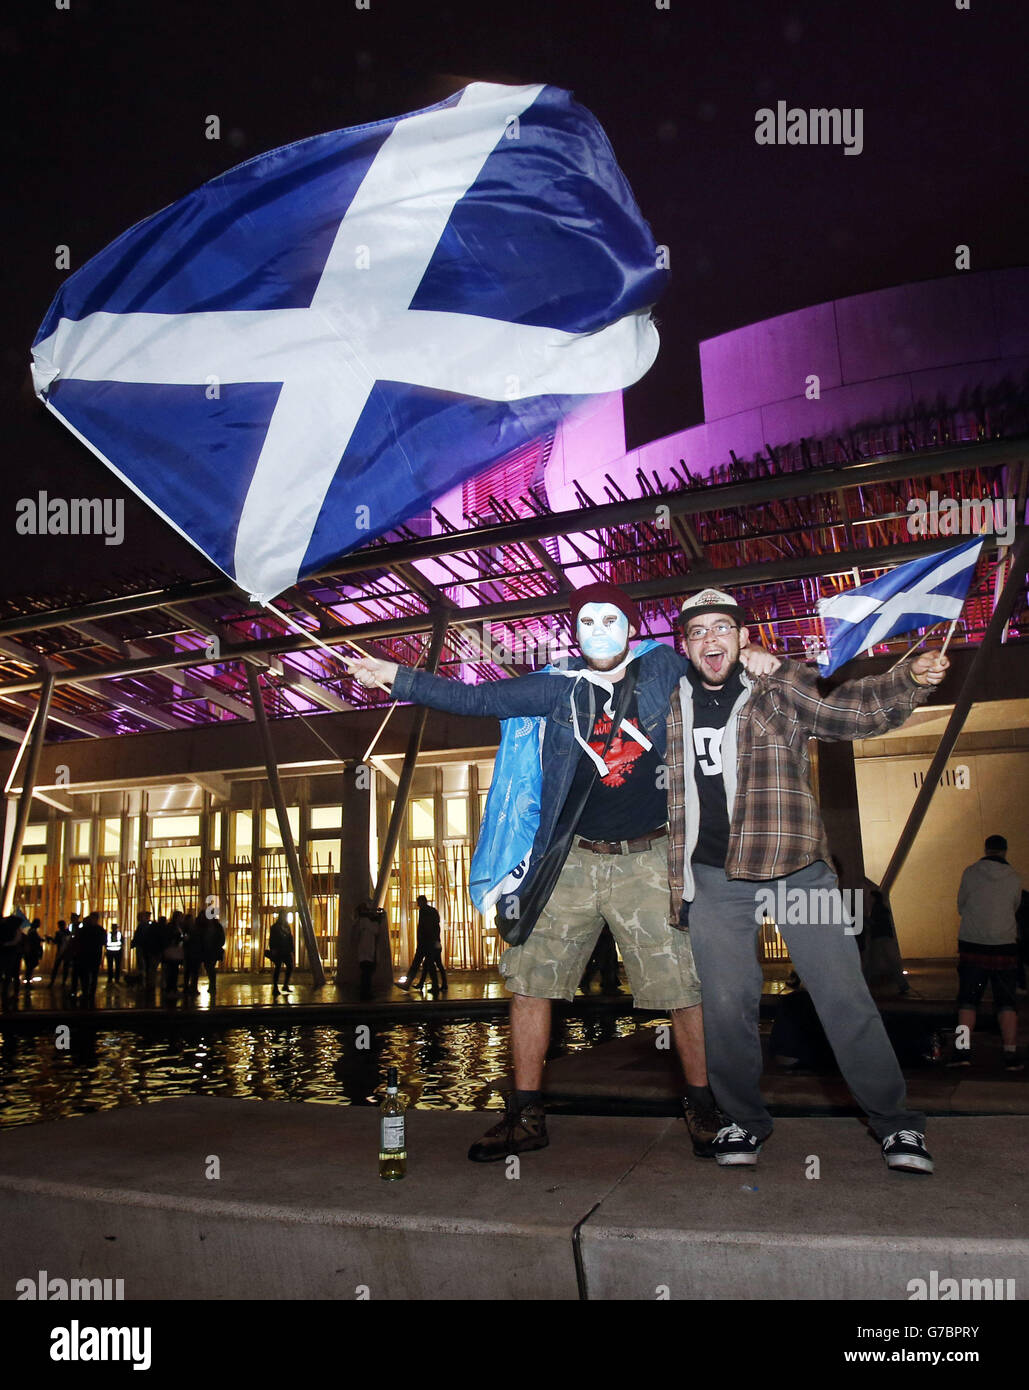 La scena al di fuori del Parlamento scozzese a Edimburgo come primo risultato del referendum sull'indipendenza ha dato un impulso agli attivisti pro-Regno Unito, con No che garantisce una vittoria confortevole nel Clackmannanshire. Foto Stock